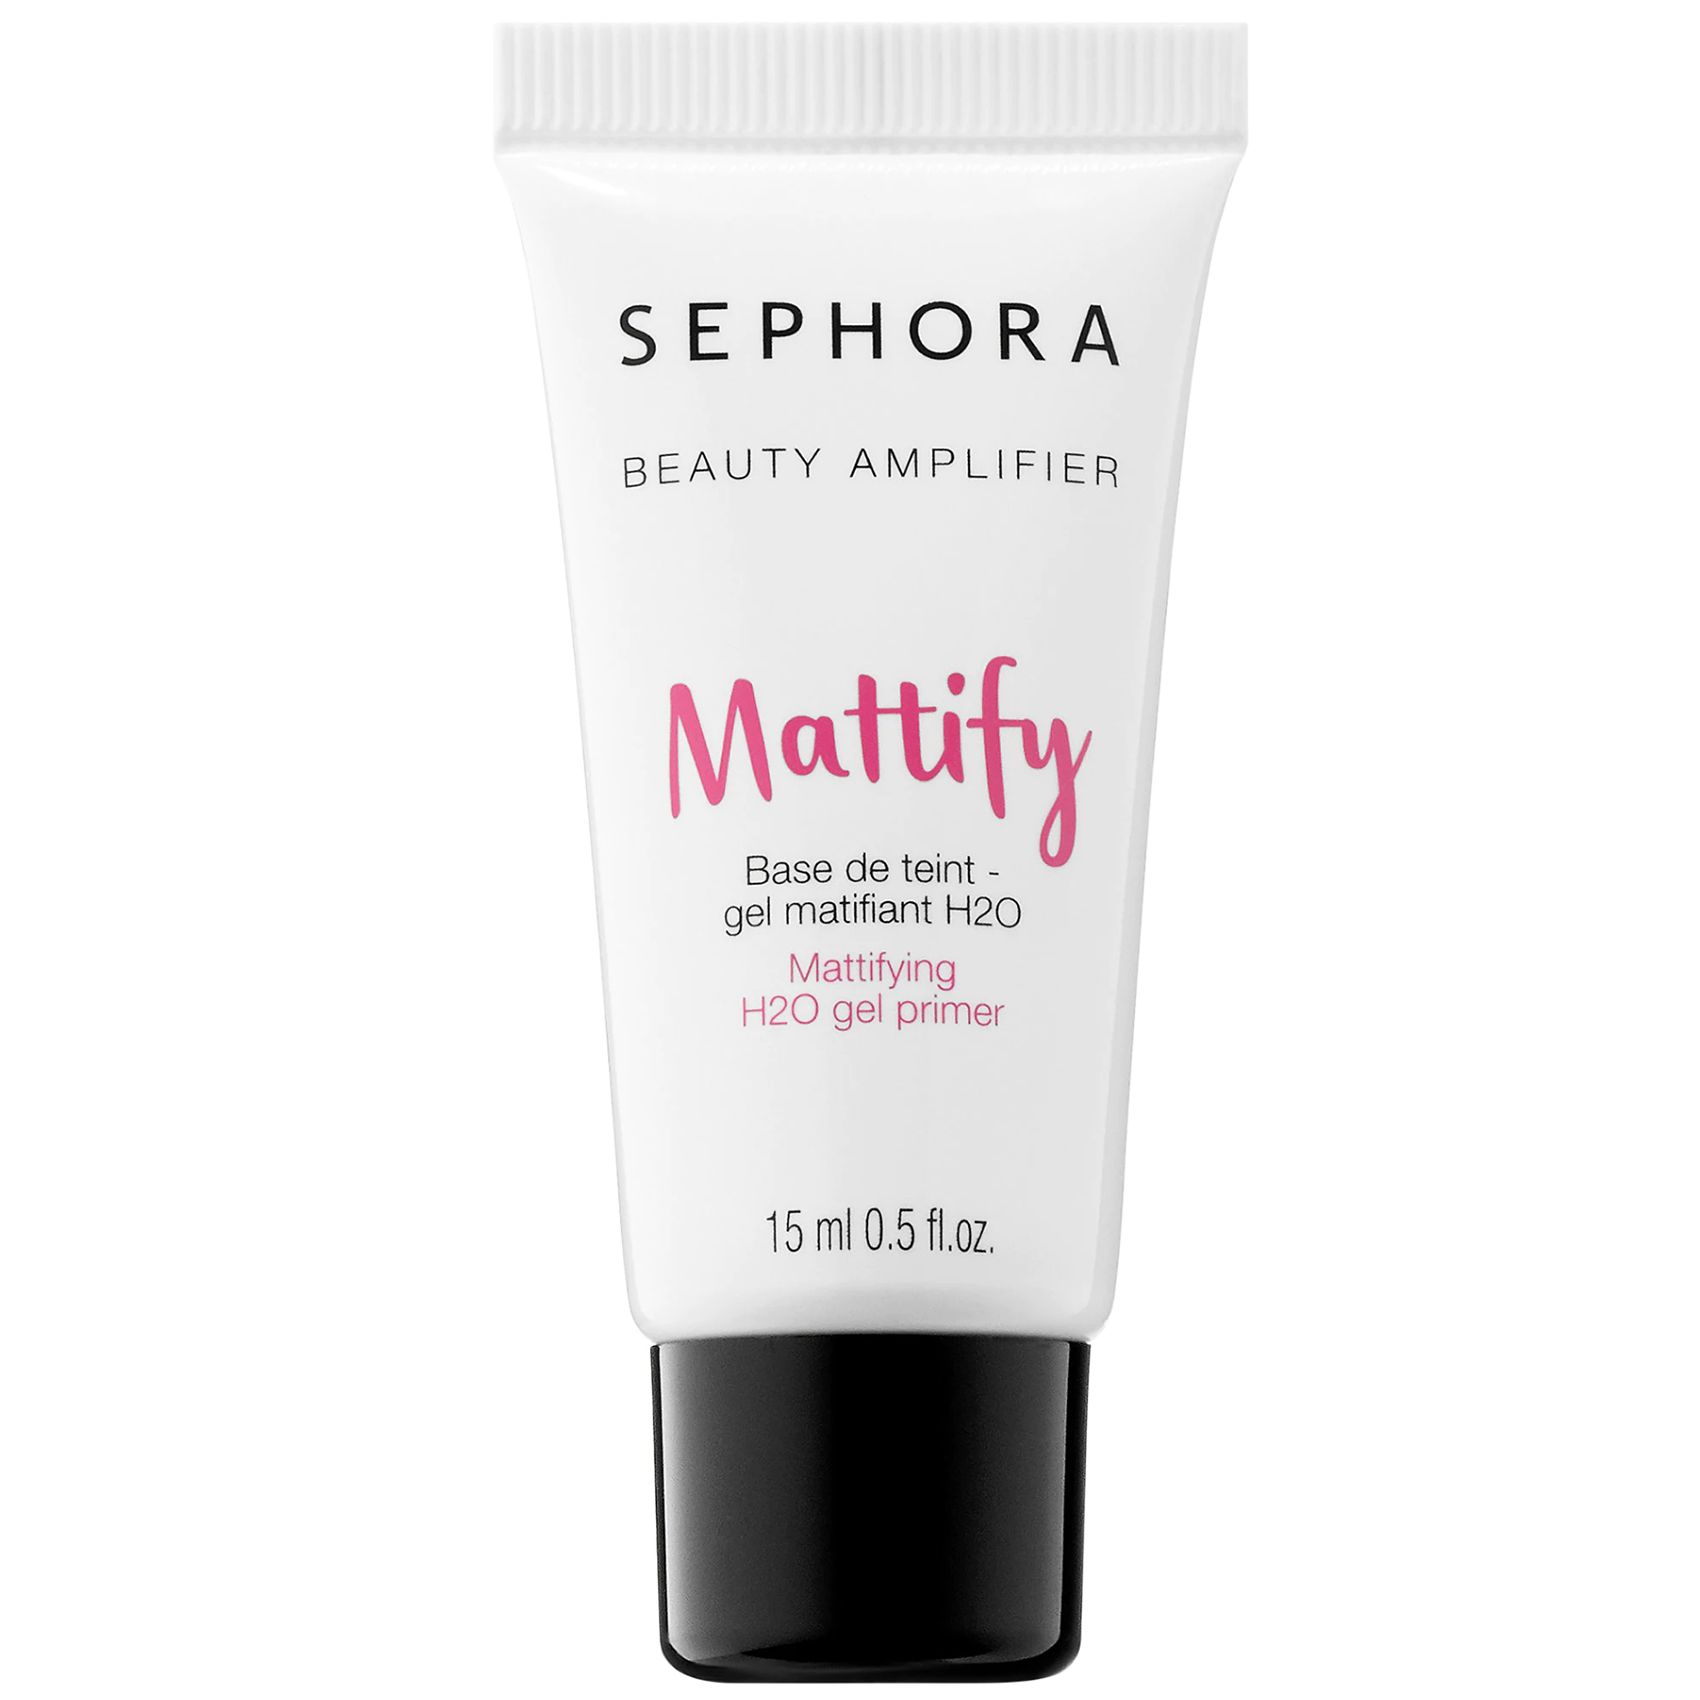 საუკეთესო წყალზე დაფუძნებული პრაიმერები: Sephora Beauty Amplifier Mattifying H2O Gel Primer